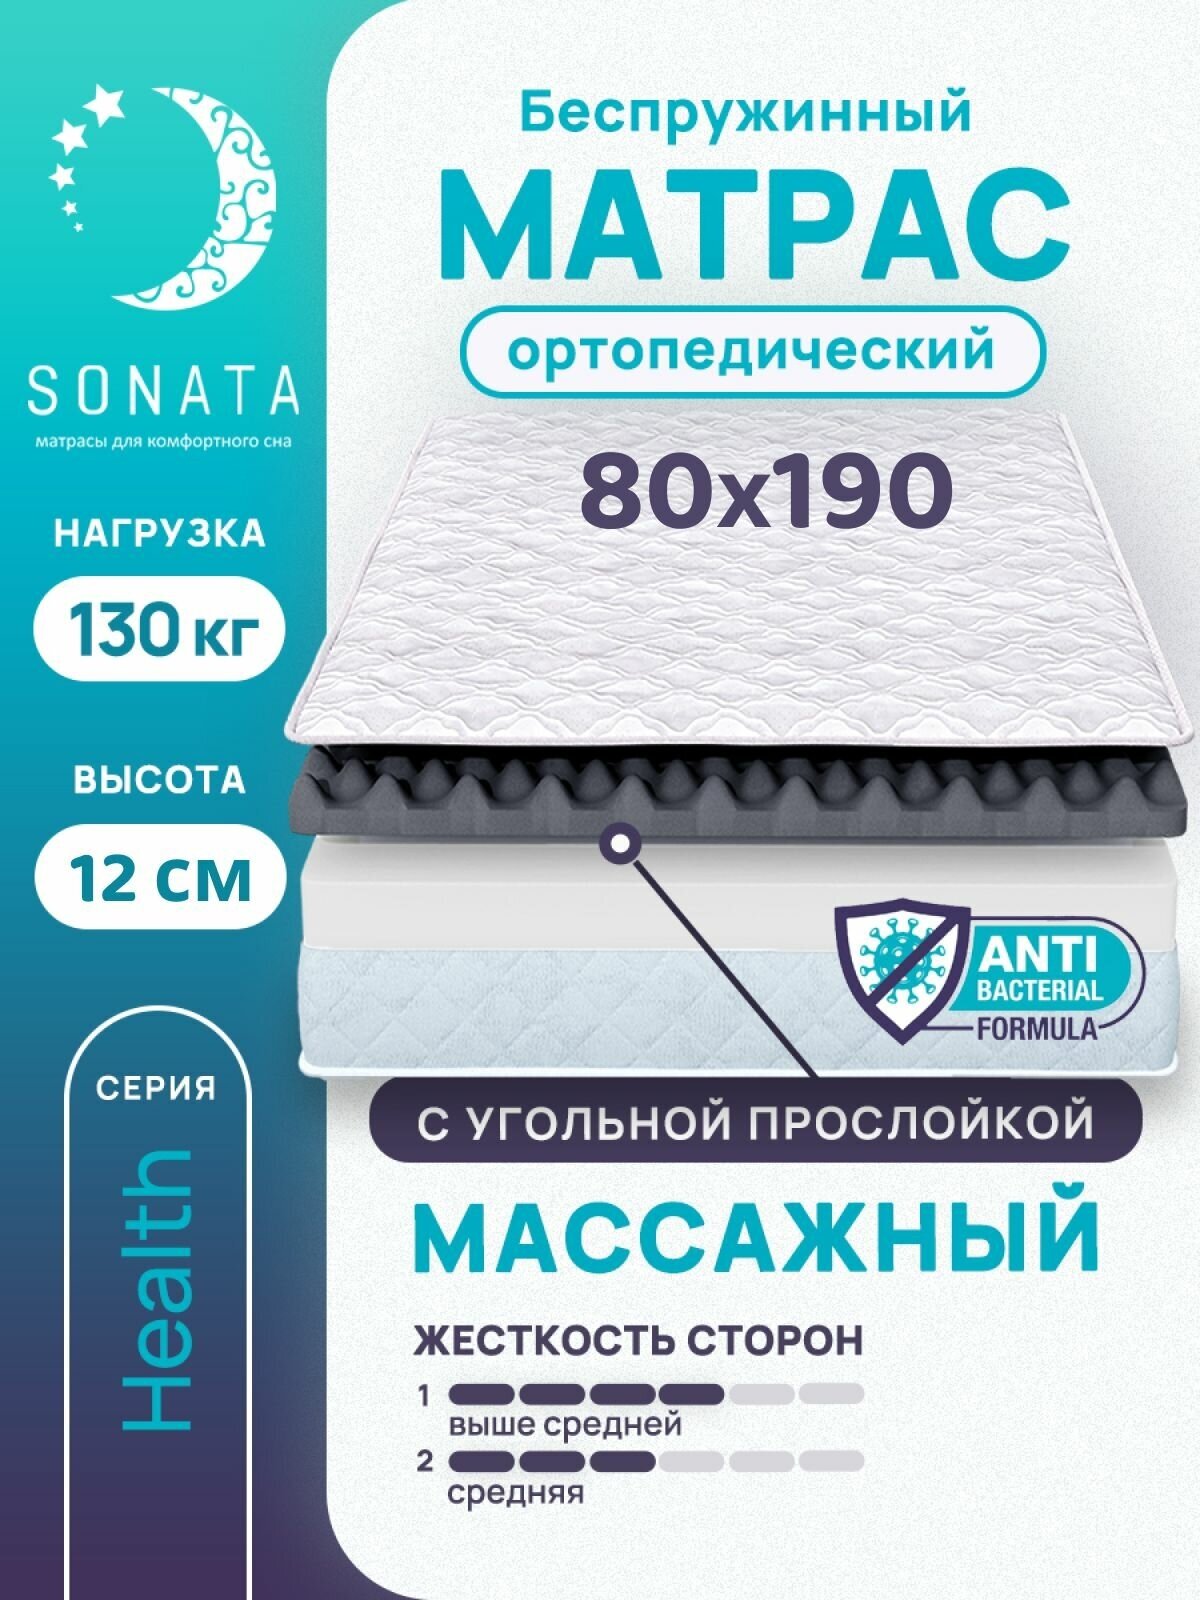 Матрас 80х190 см SONATA, беспружинный, односпальный, матрац для кровати, высота 12 см, с массажным эффектом